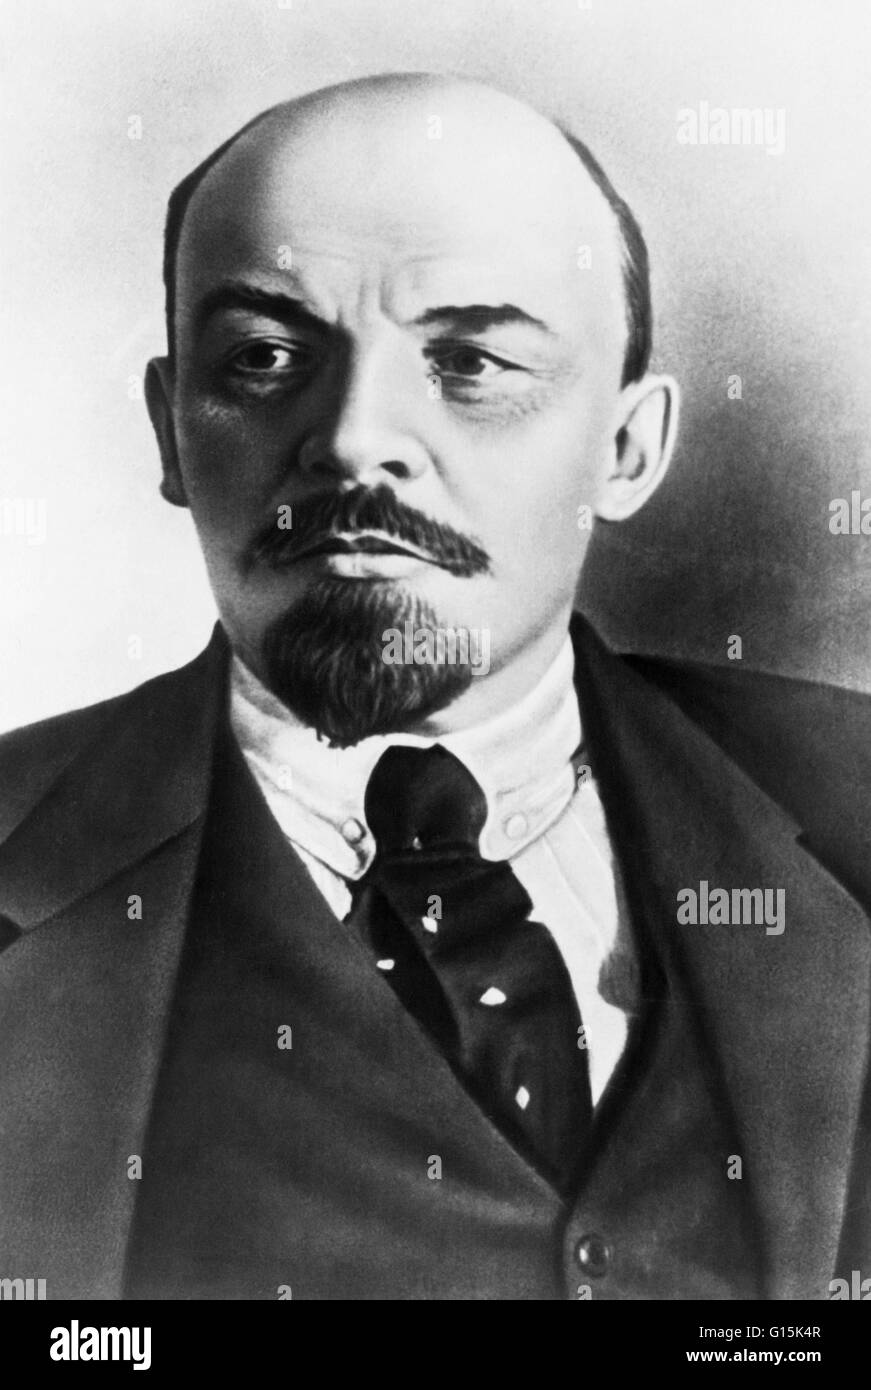 Vladimir Ilyich Lenin (22. April 1870 - 21. Januar 1924) war ein russischer marxistischer revolutionär, Politiker, russischer Staatsmann und marxistischer Theoretiker. Lenin war der erste Premierminister der Sowjetunion. 1903 gründete er die Bolschewiki (radikale maj Stockfoto